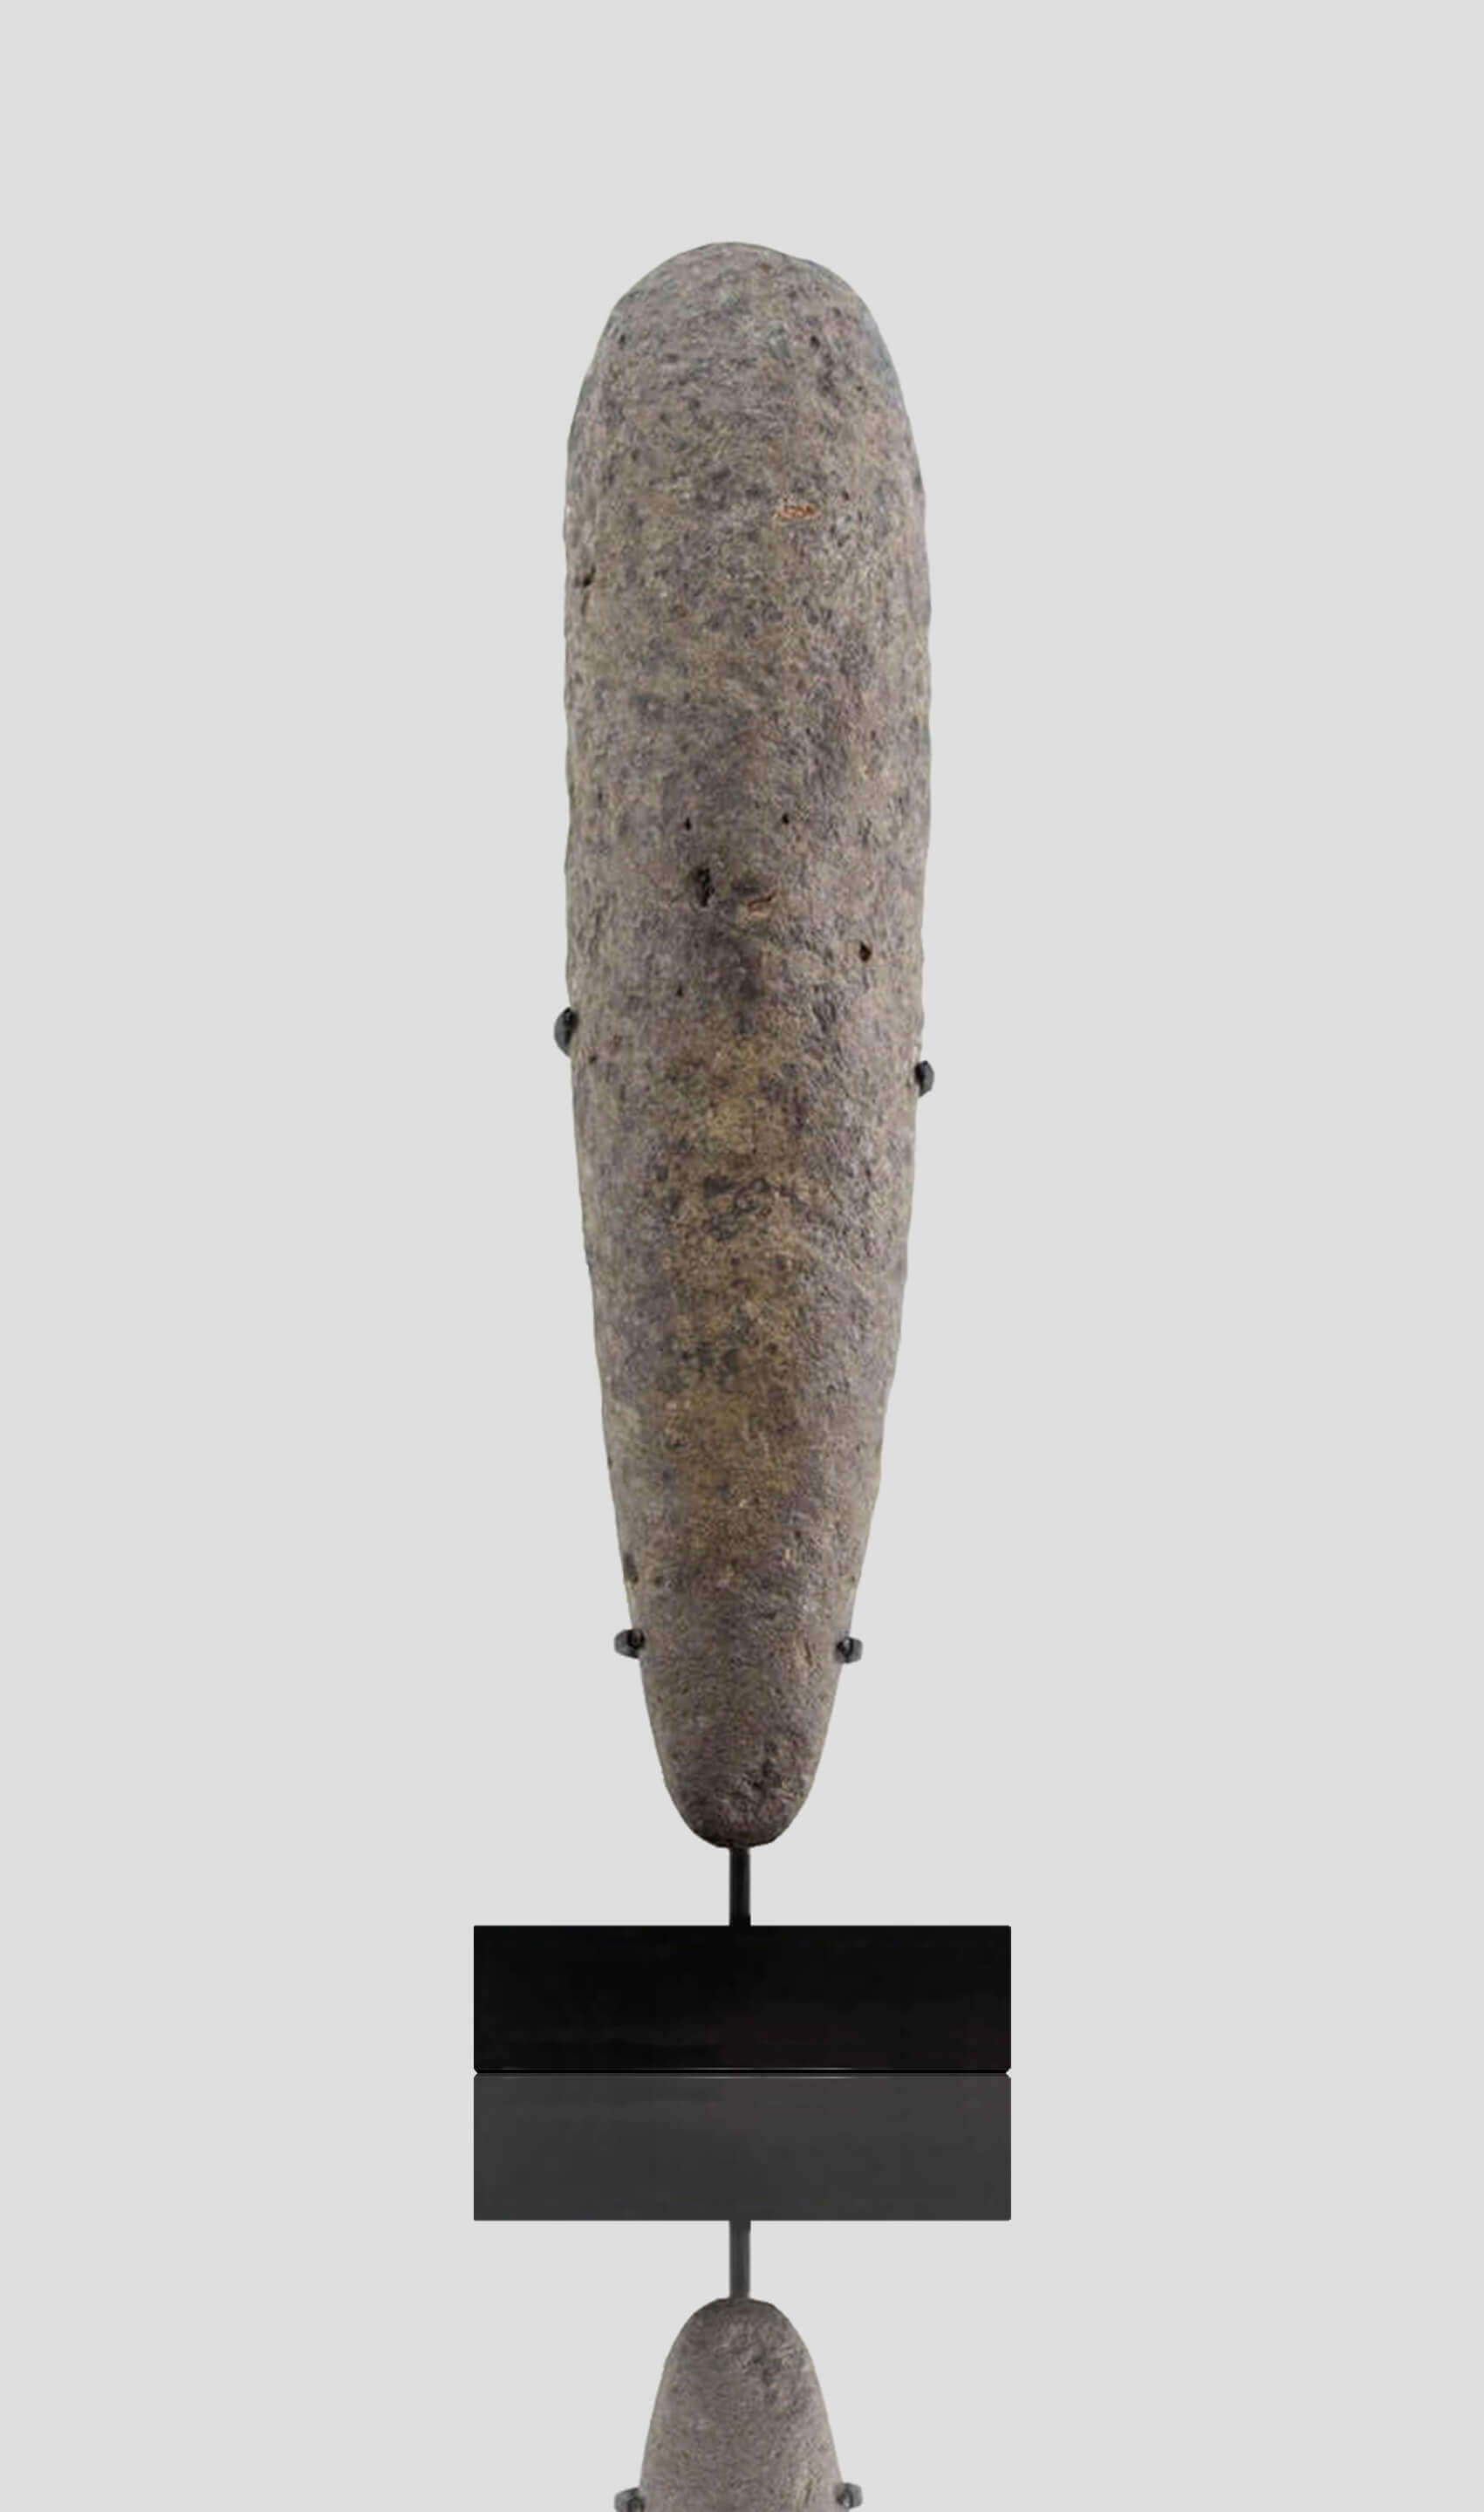 アーティファクト 新石器時代 カプシアン 手杵 [紀元前 8,500 年] 350mm